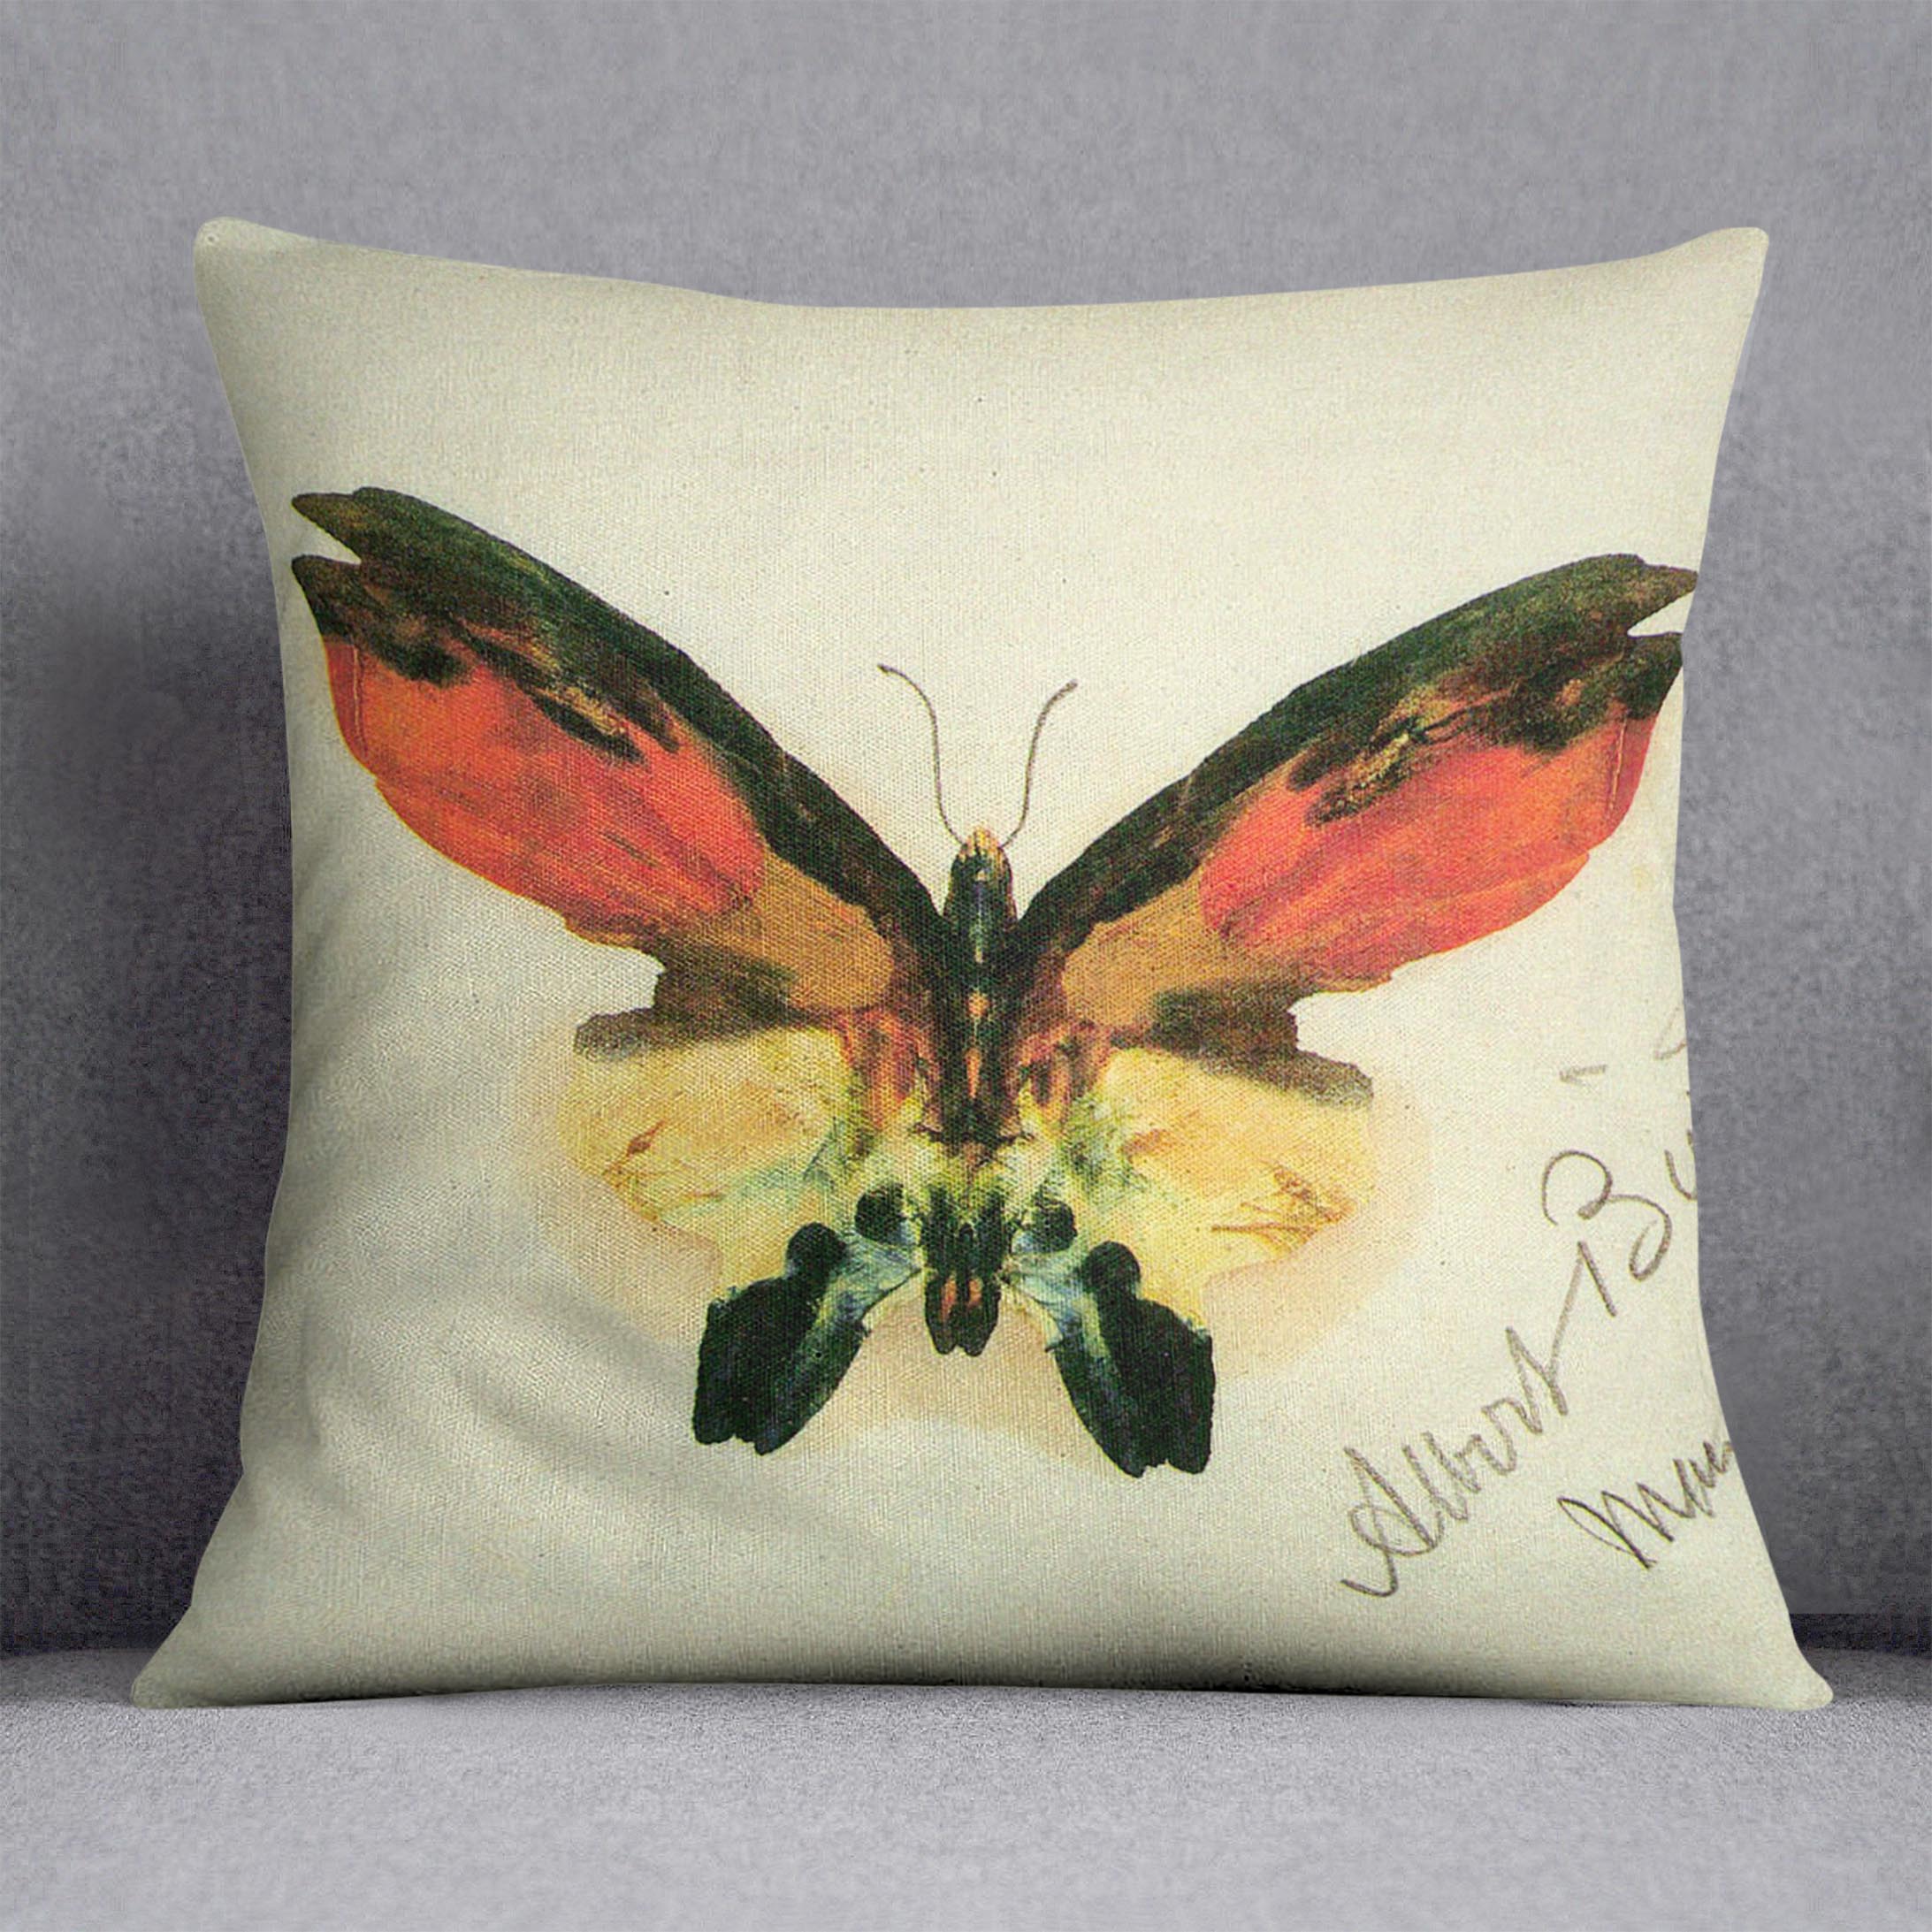 Butterfly 2 by Bierstadt Cushion - Canvas Art Rocks - 1